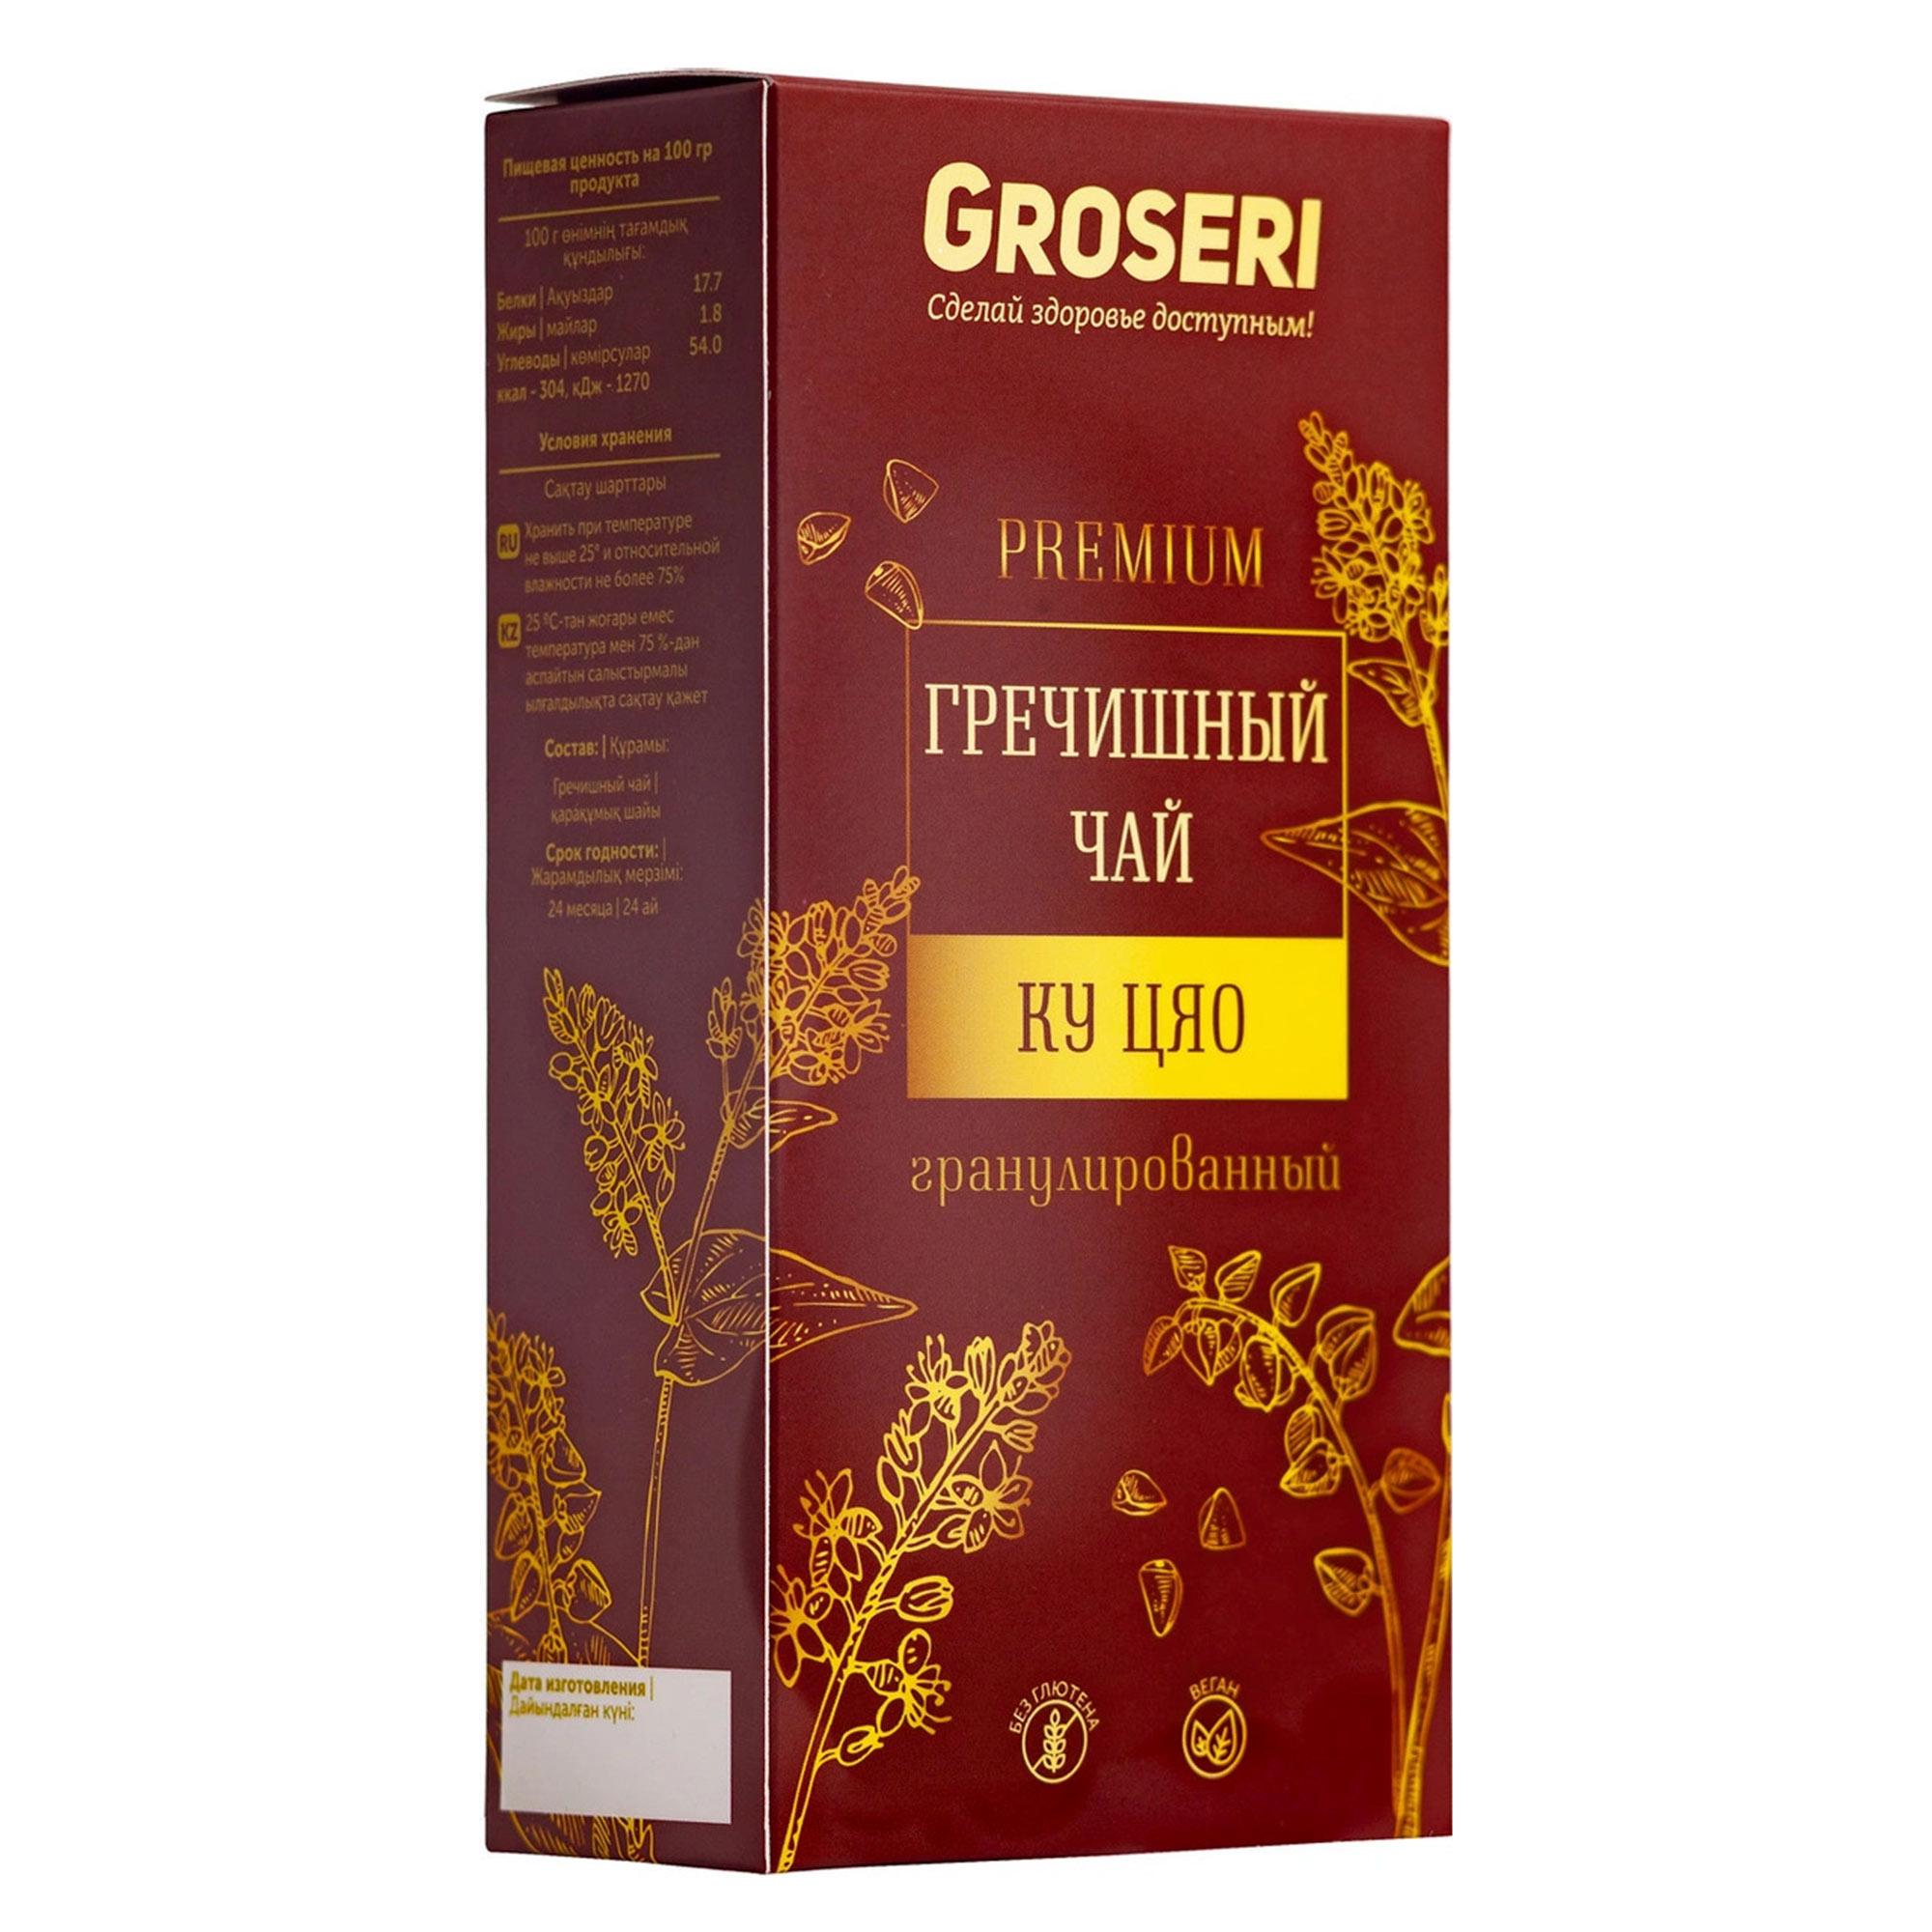 Чай гречишный Groseri Ку Цяо Premium 100 г